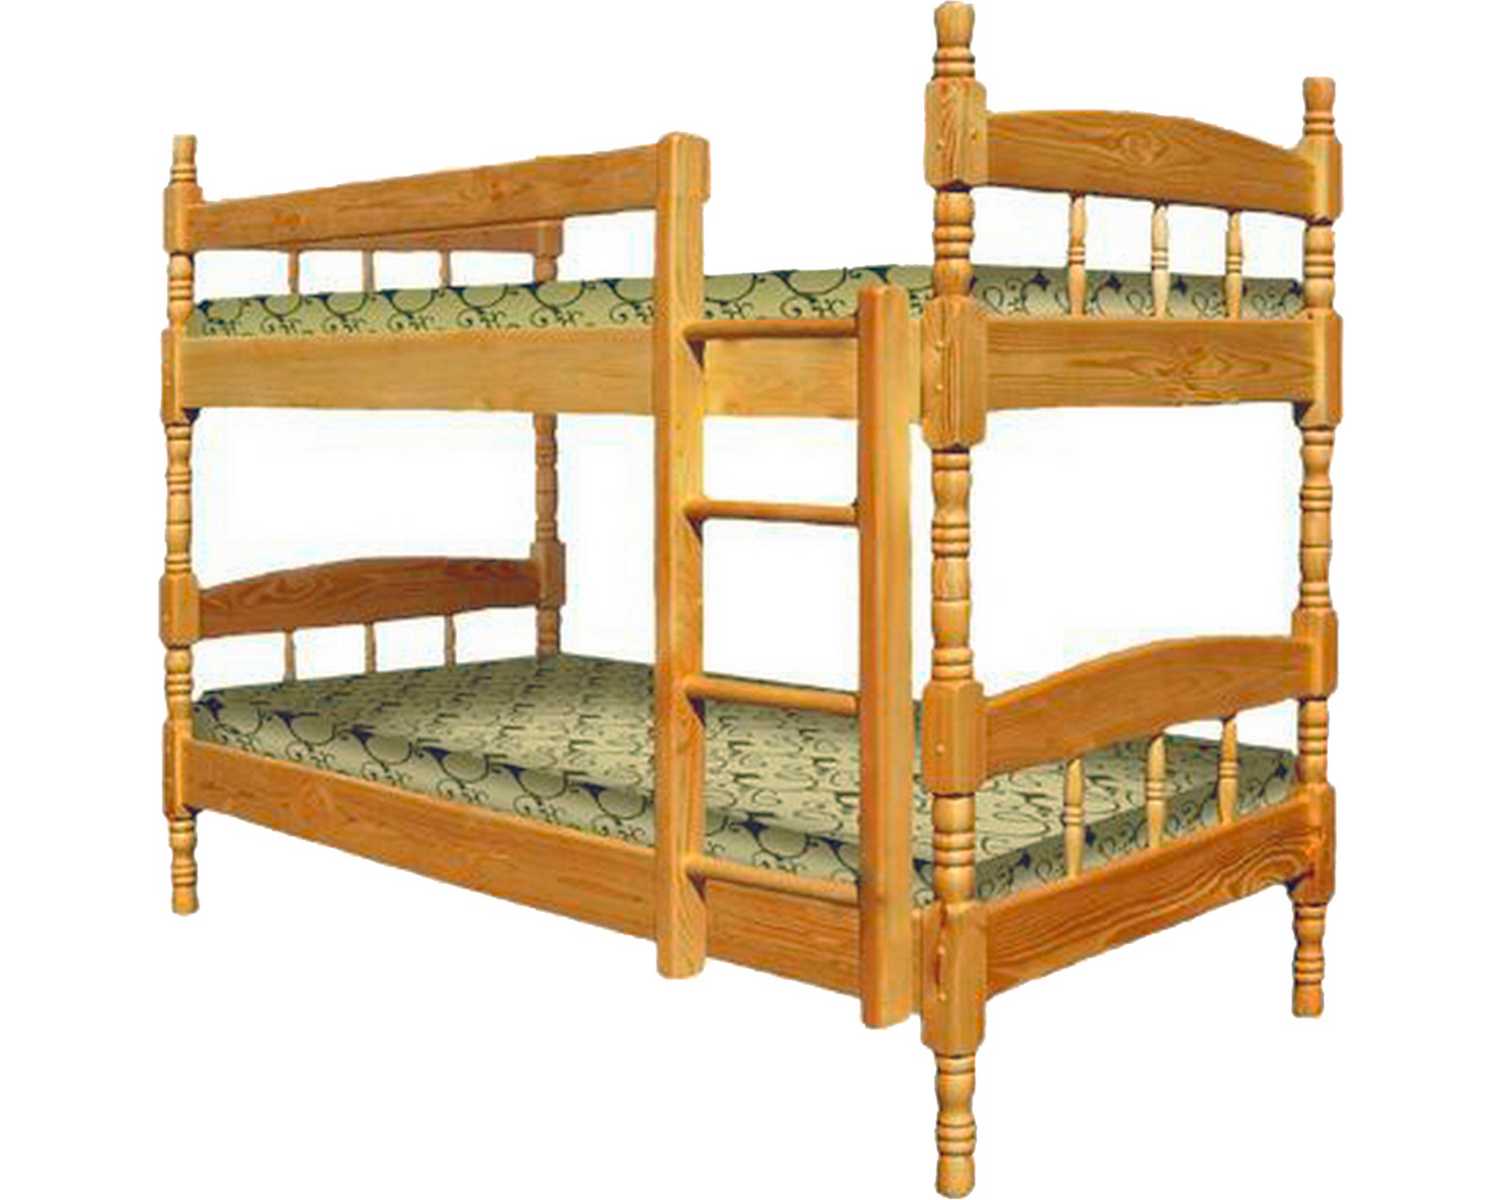 Кровать для детей от 3 лет из дерева